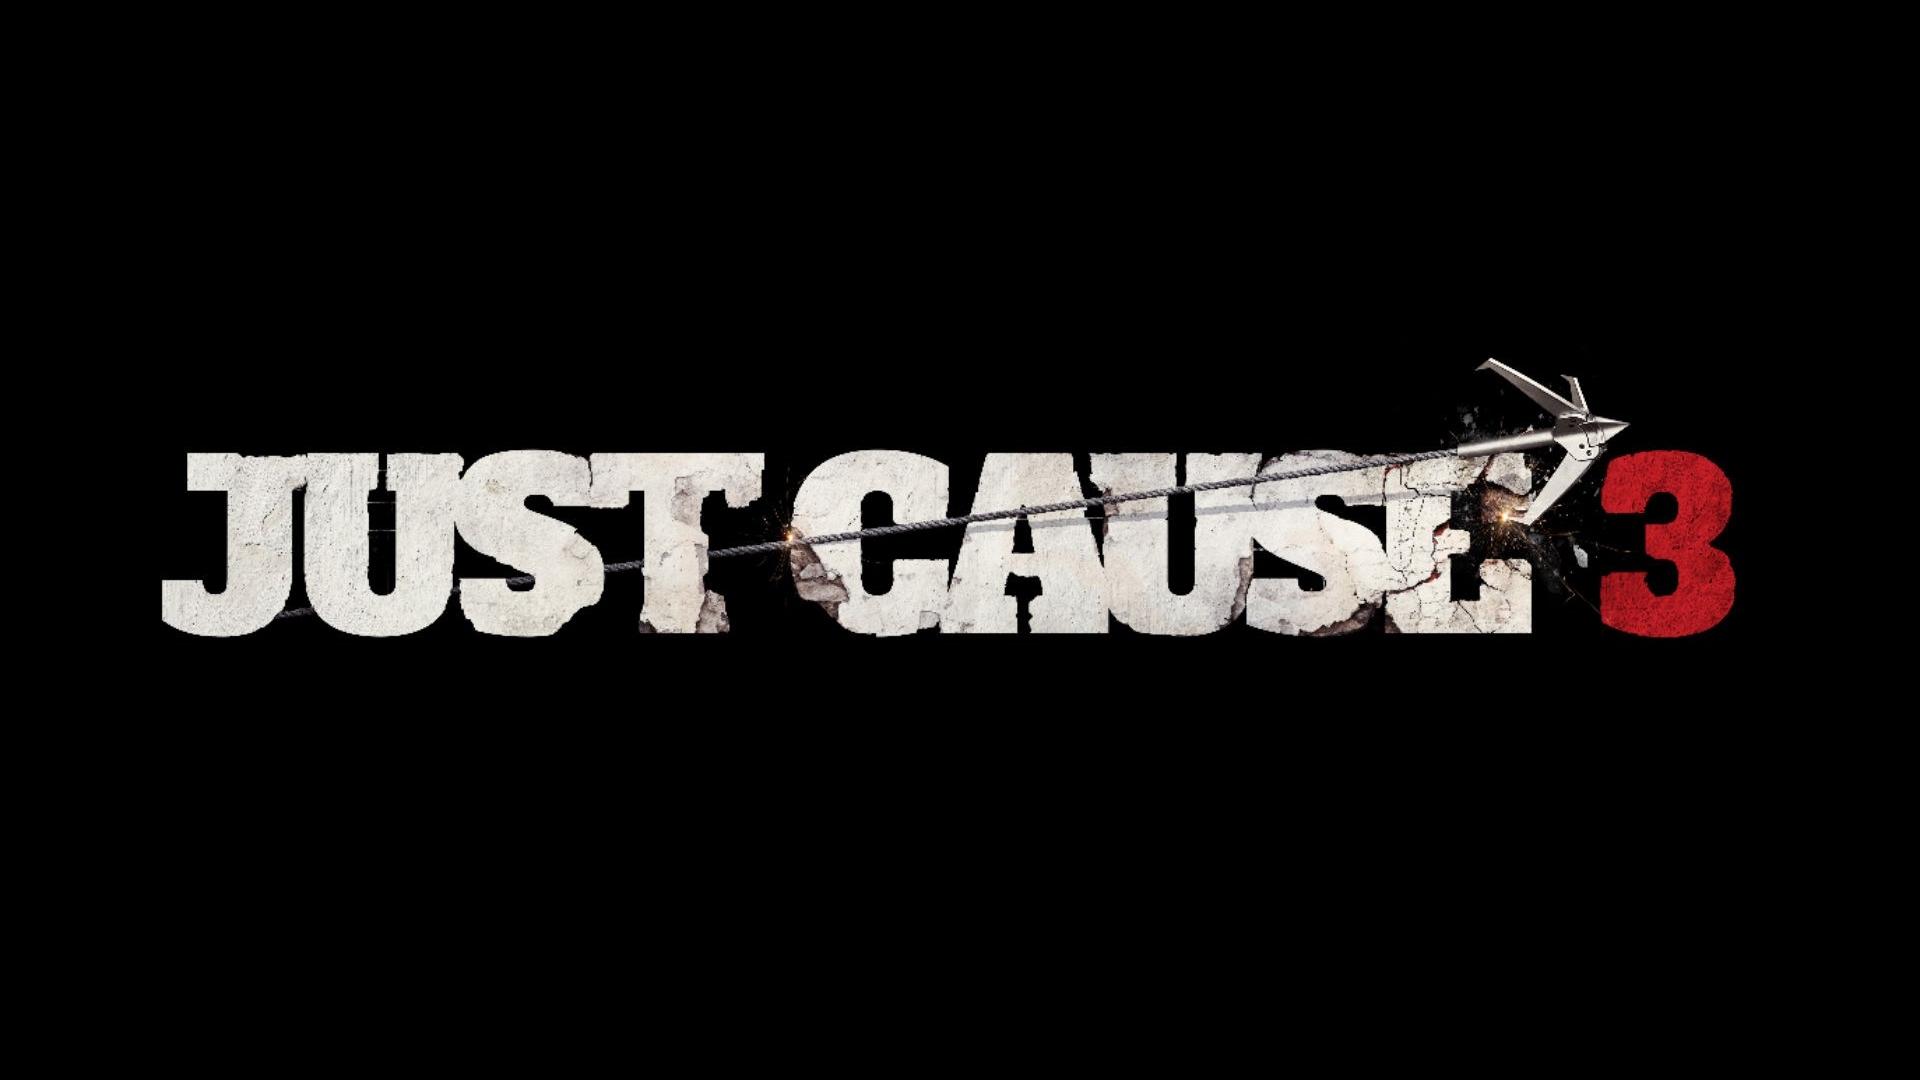 RÃ©sultat de recherche d'images pour "just cause 3 logo"